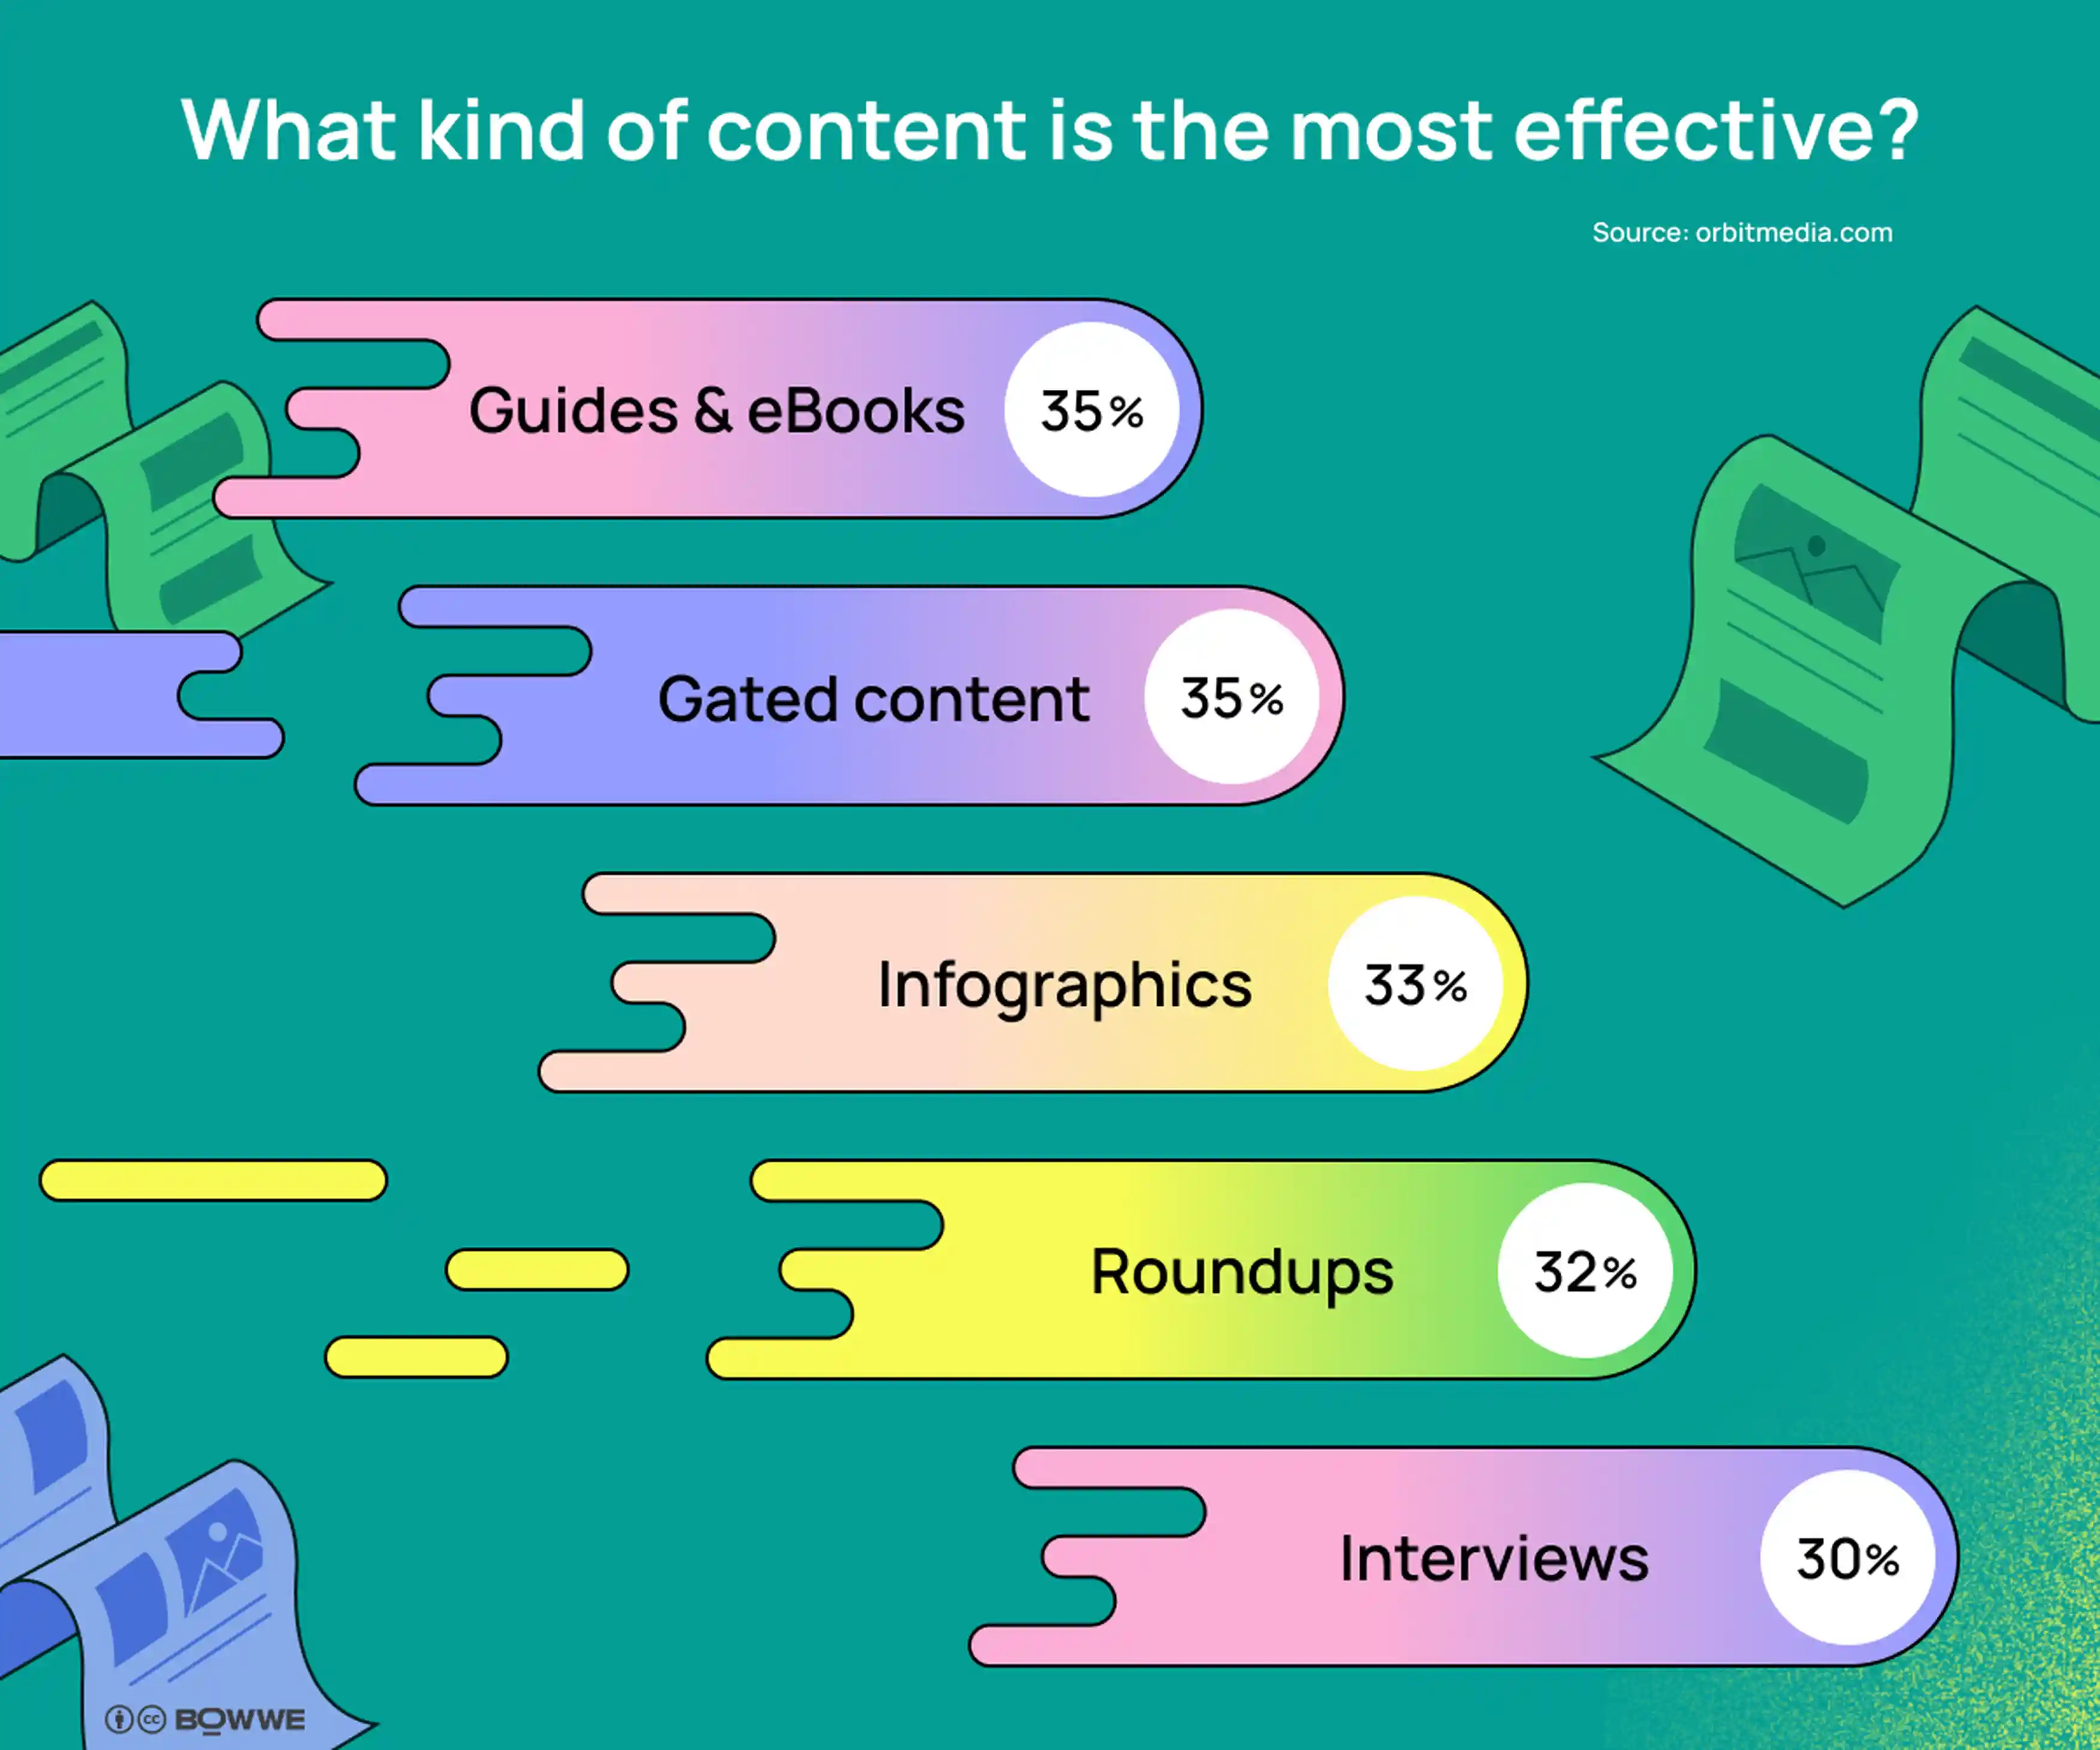 Gráficos con fondo verde claro con 5 gráficos en morado oscuro. El titular dice "¿Qué tipo de contenido es el más eficaz?".